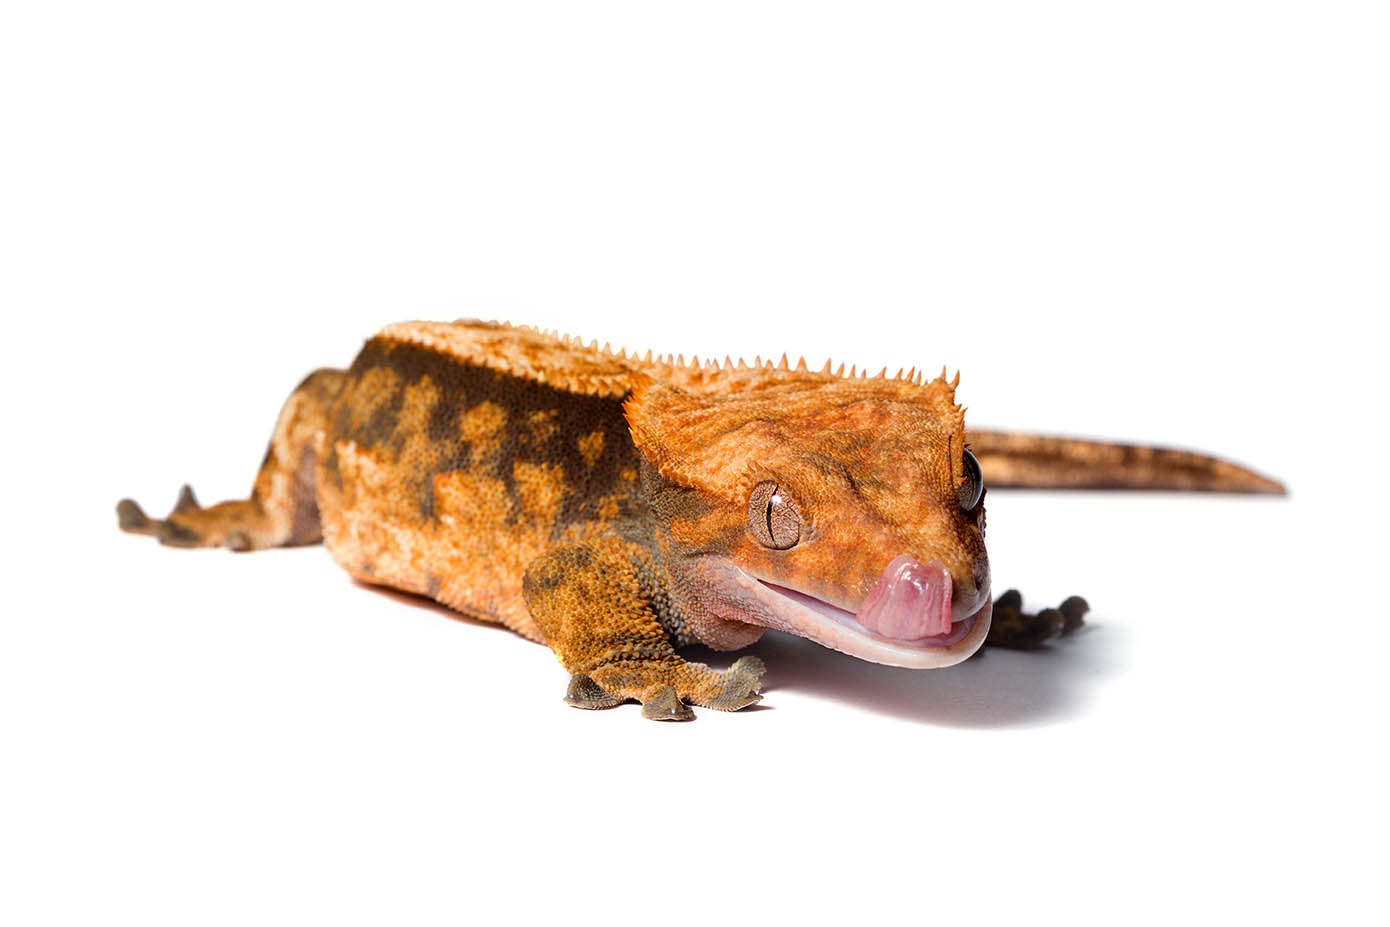 Harlequin crested gecko